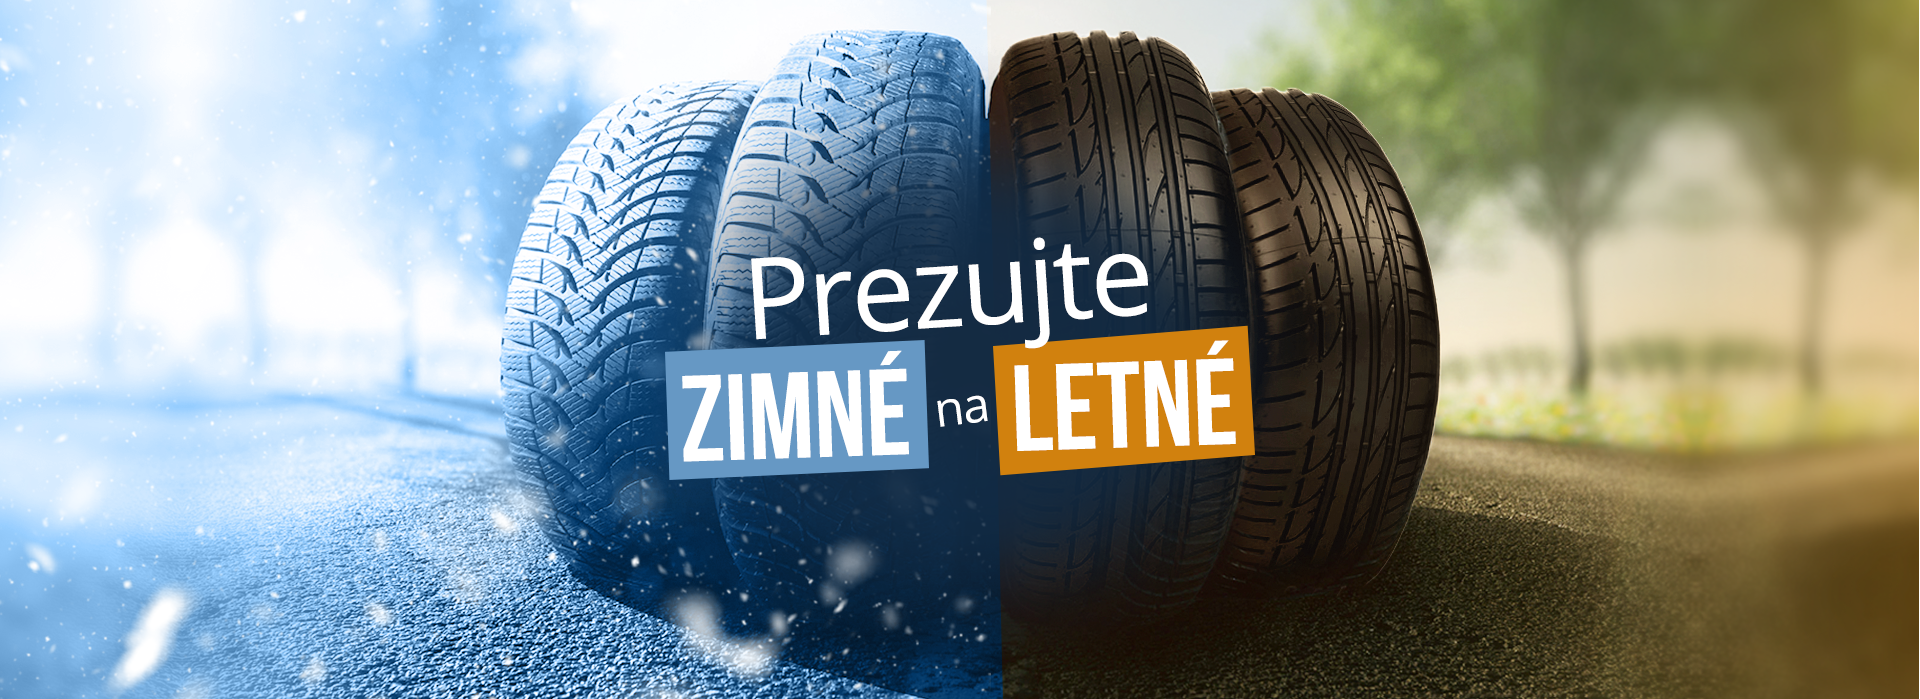 Autoprofit.sk Prezujte zimné pneumatiky na letné